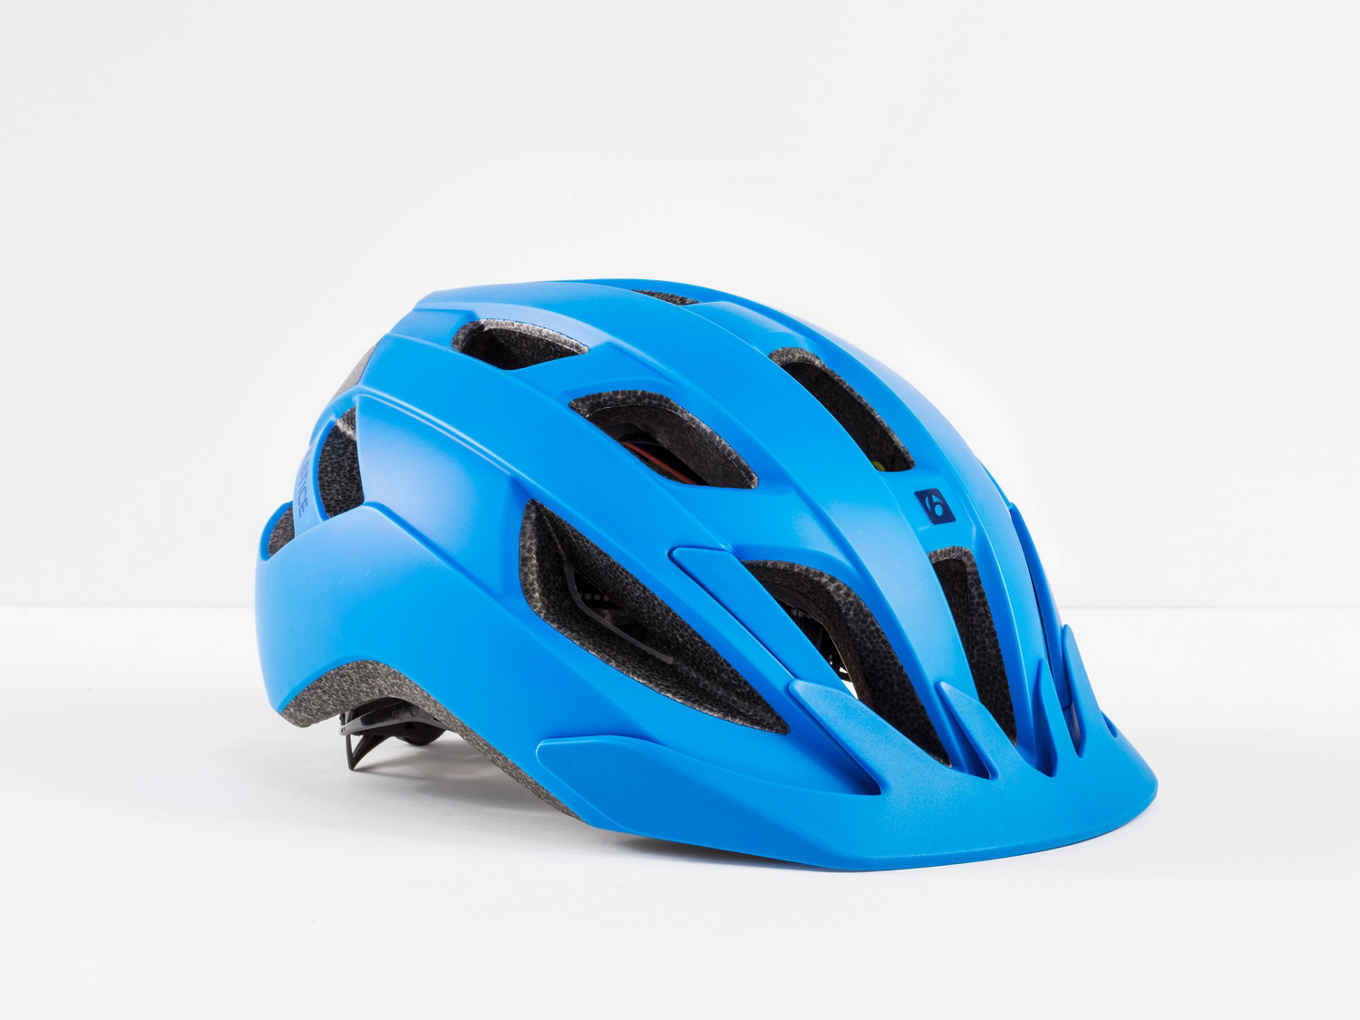 bontrager solstice mips bike helmet amazon